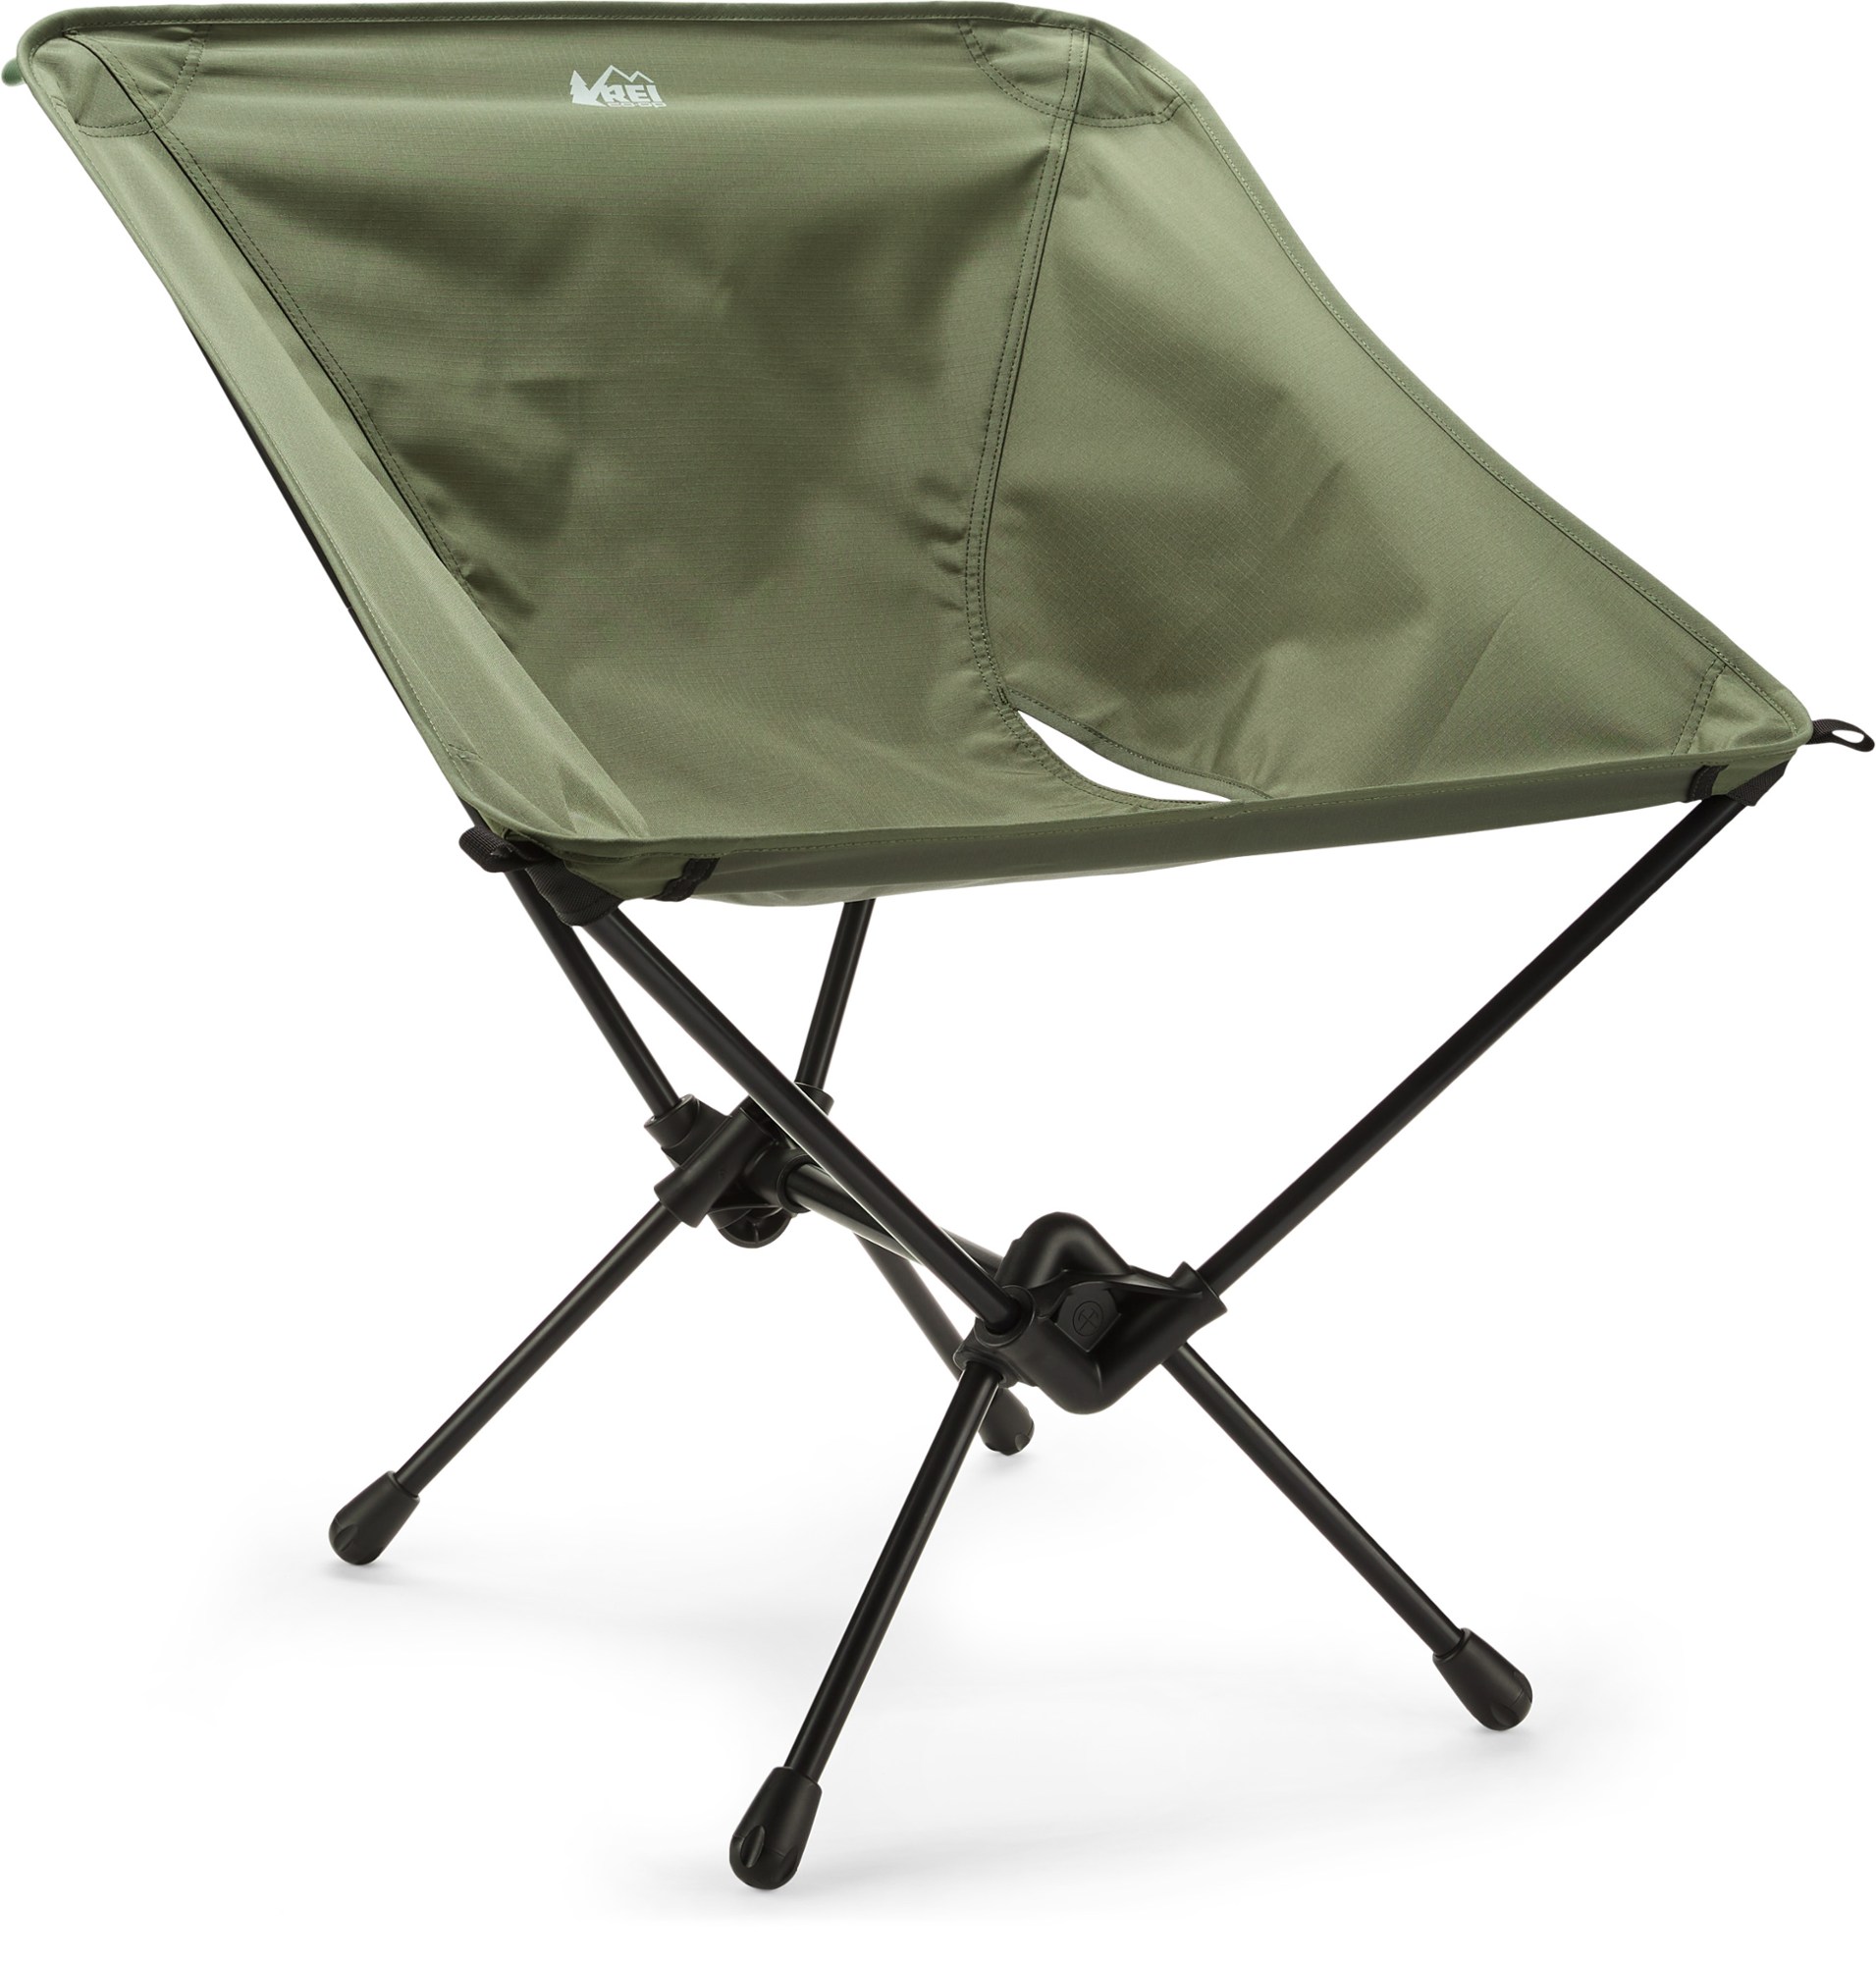 REI Co-op Flexlite Camp Boss camping chair